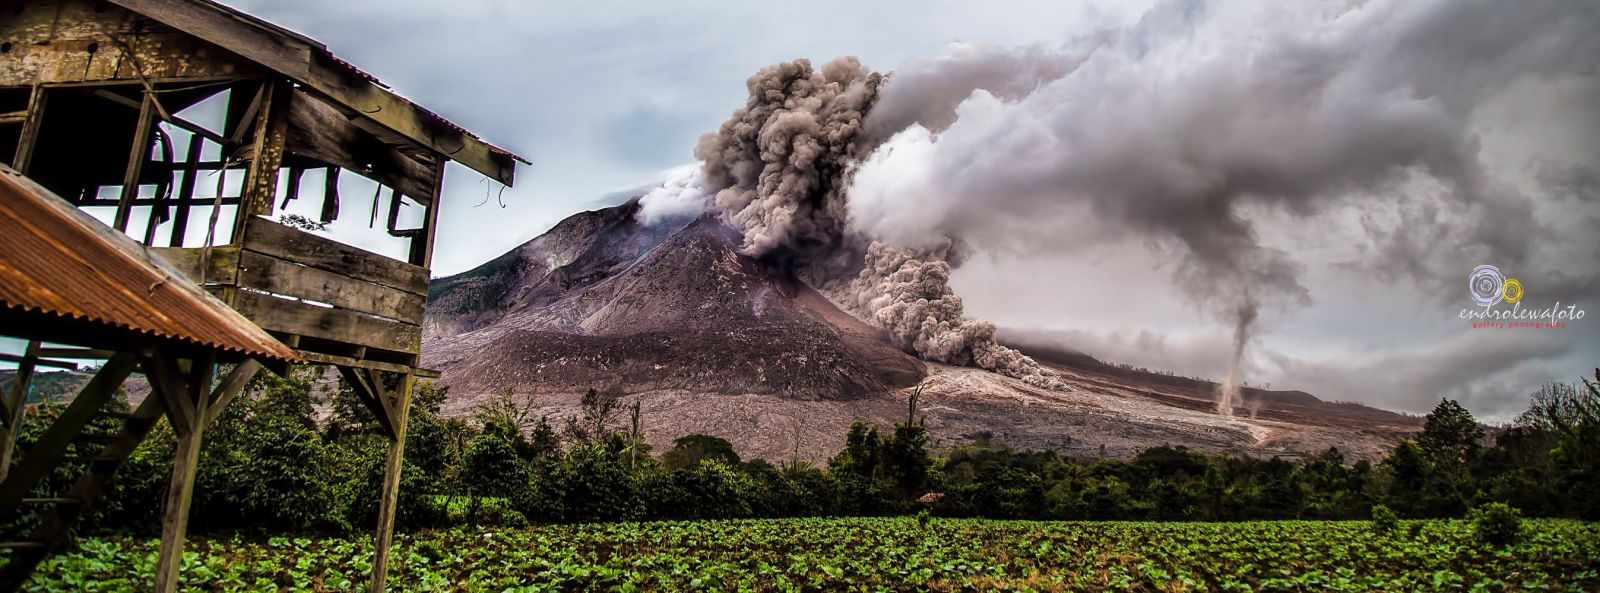 Sinabung volcano eruption, November 1, 2016. Image credit: Endro Lewa